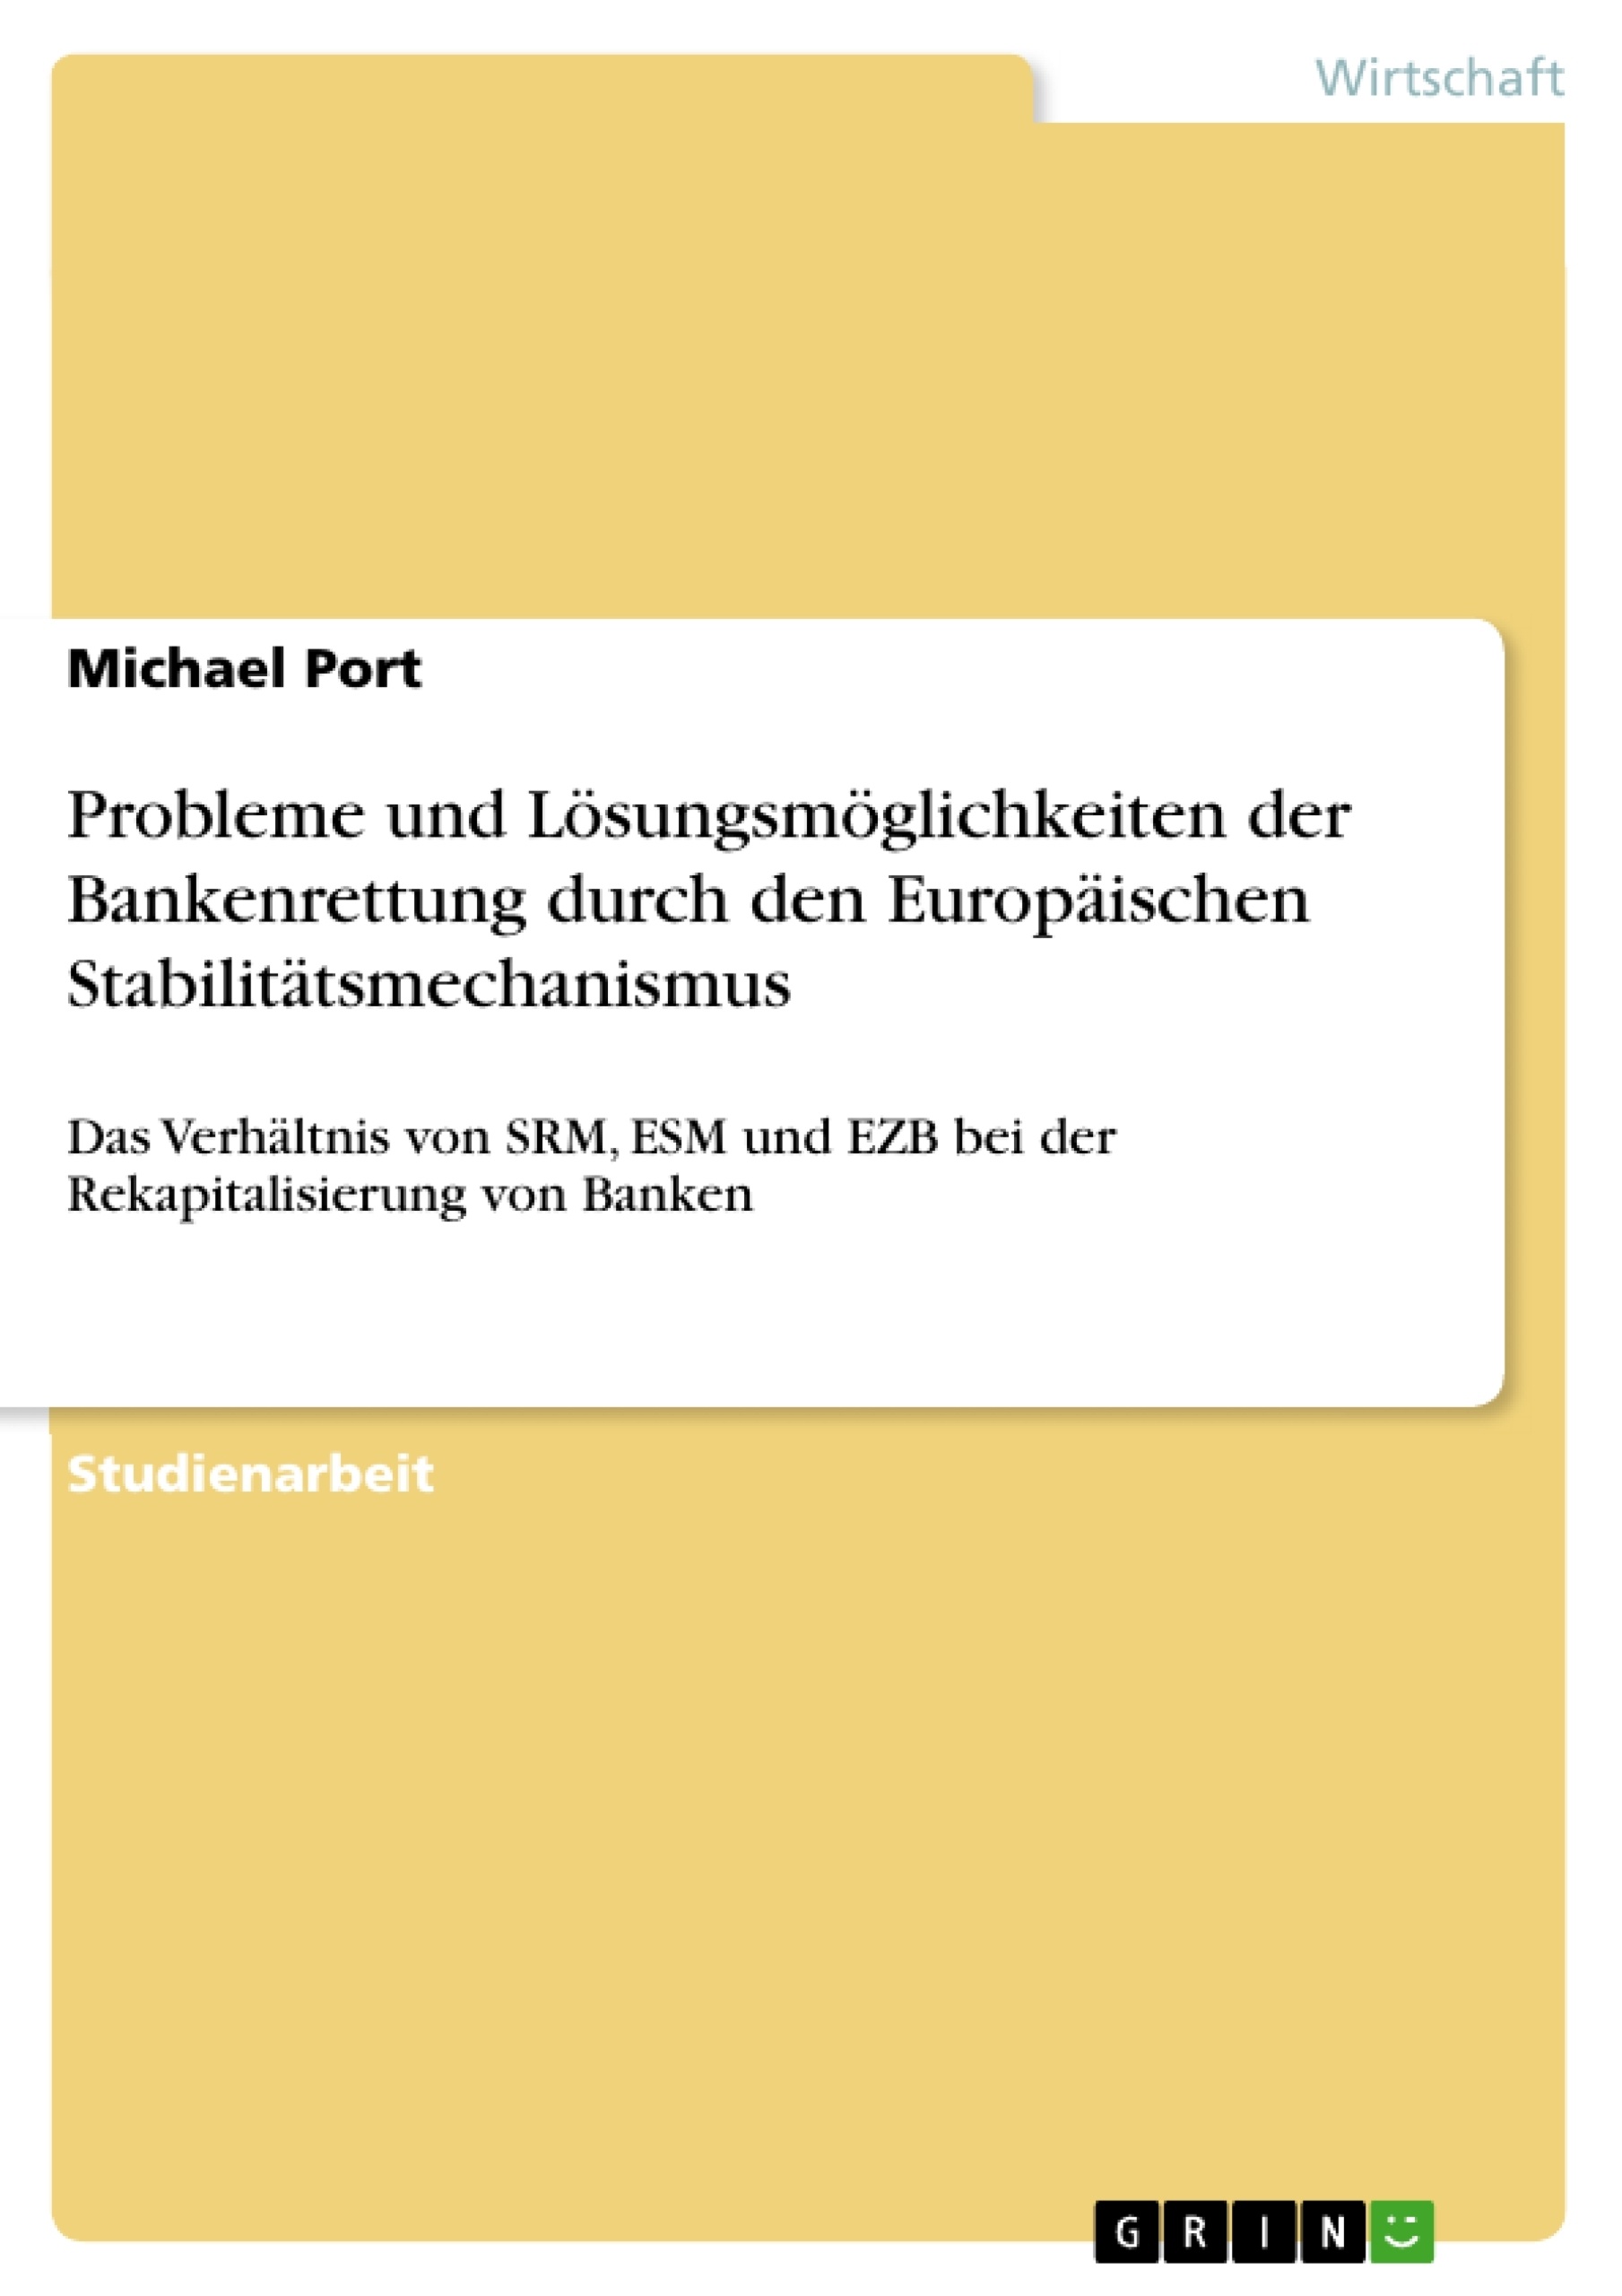 Titre: Probleme und Lösungsmöglichkeiten der Bankenrettung durch den Europäischen Stabilitätsmechanismus